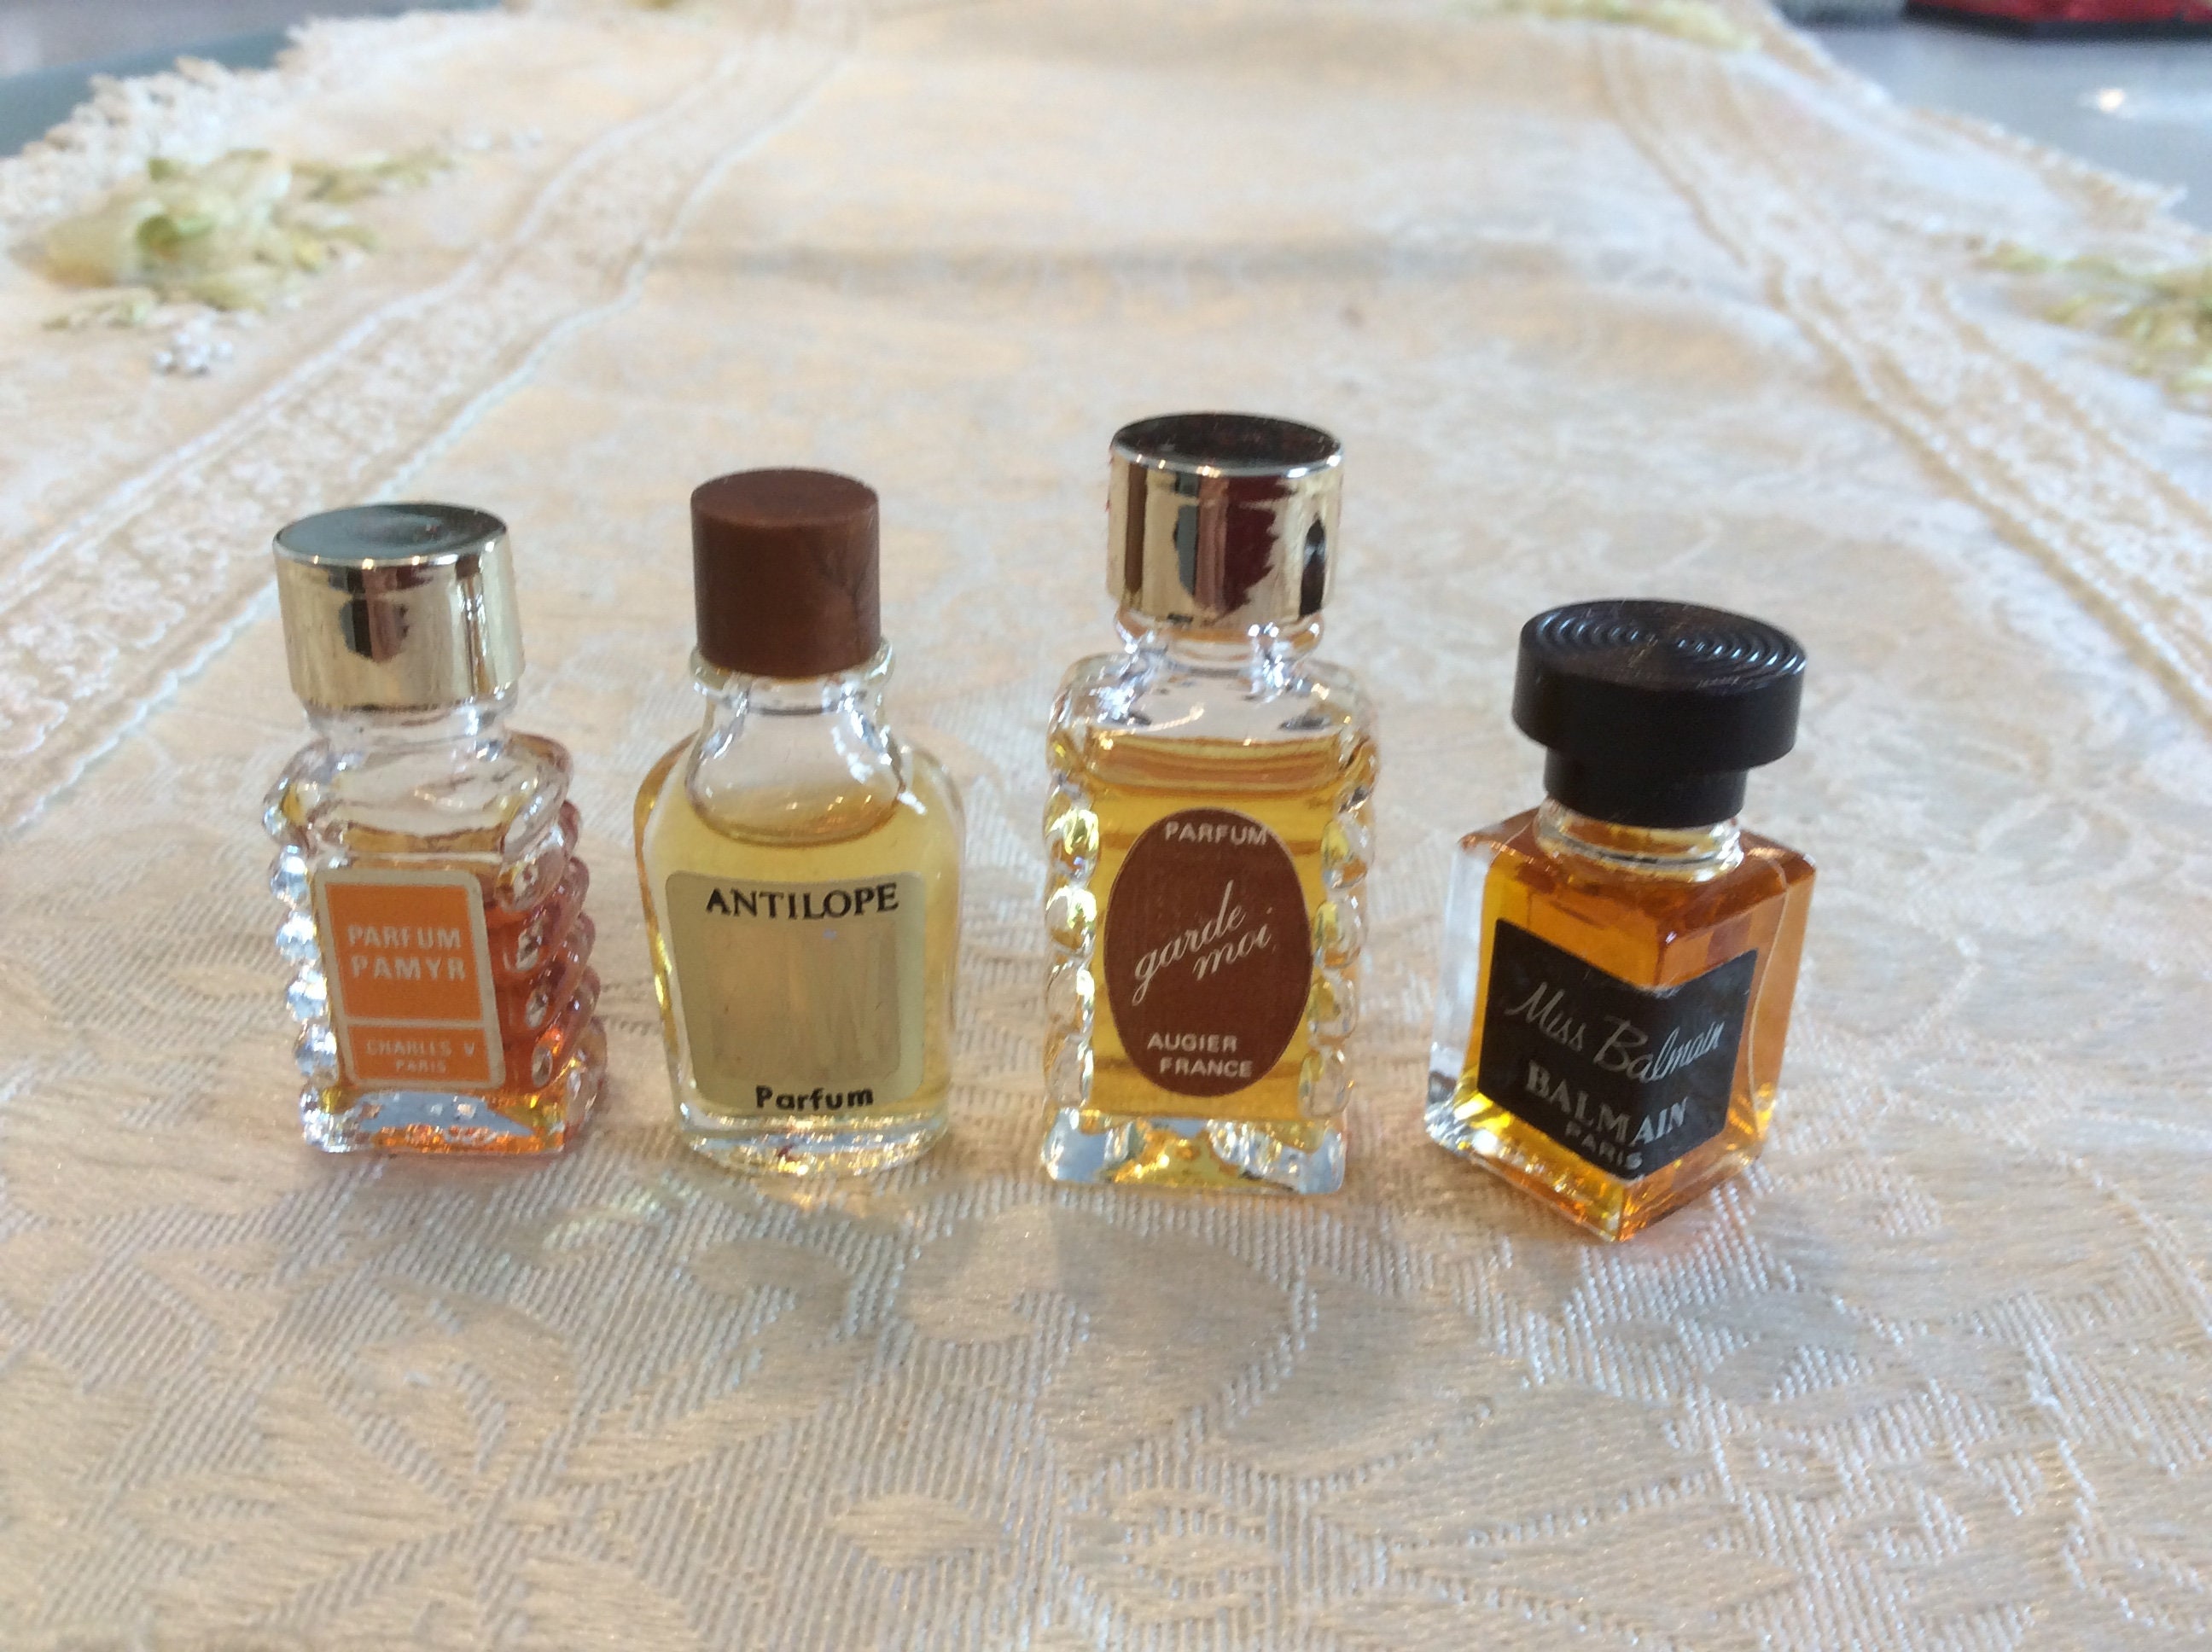 9 Miniature Unused Perfume Bottles Chanel Joop Dali Fidgi 